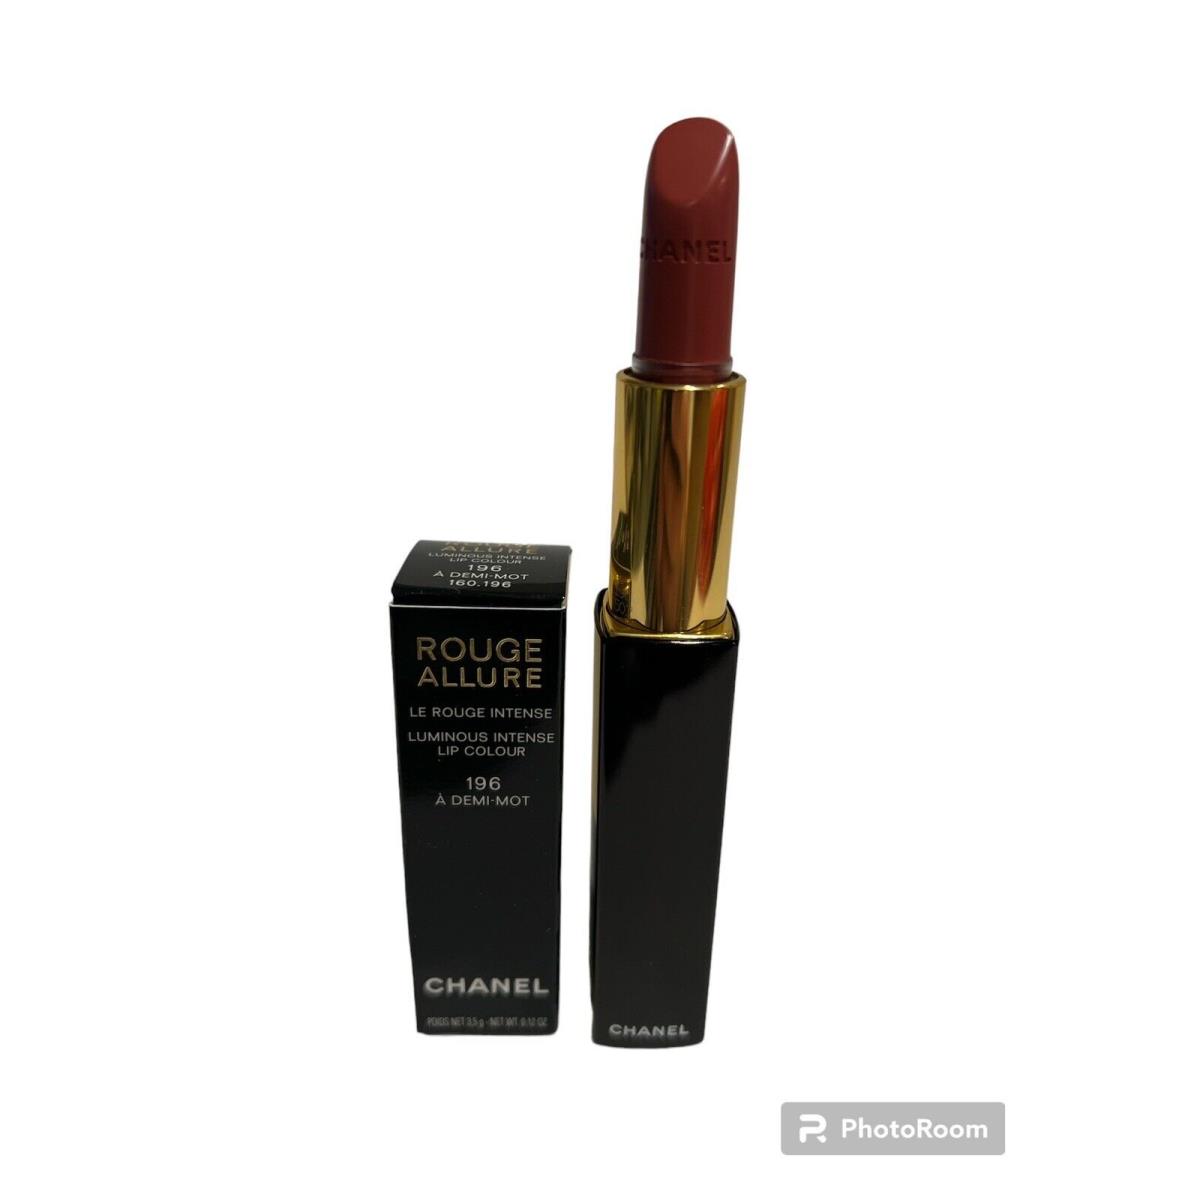 Chanel Rouge Allure Luminous Intense Lip Color 196 A Demi-mot 0.12oz